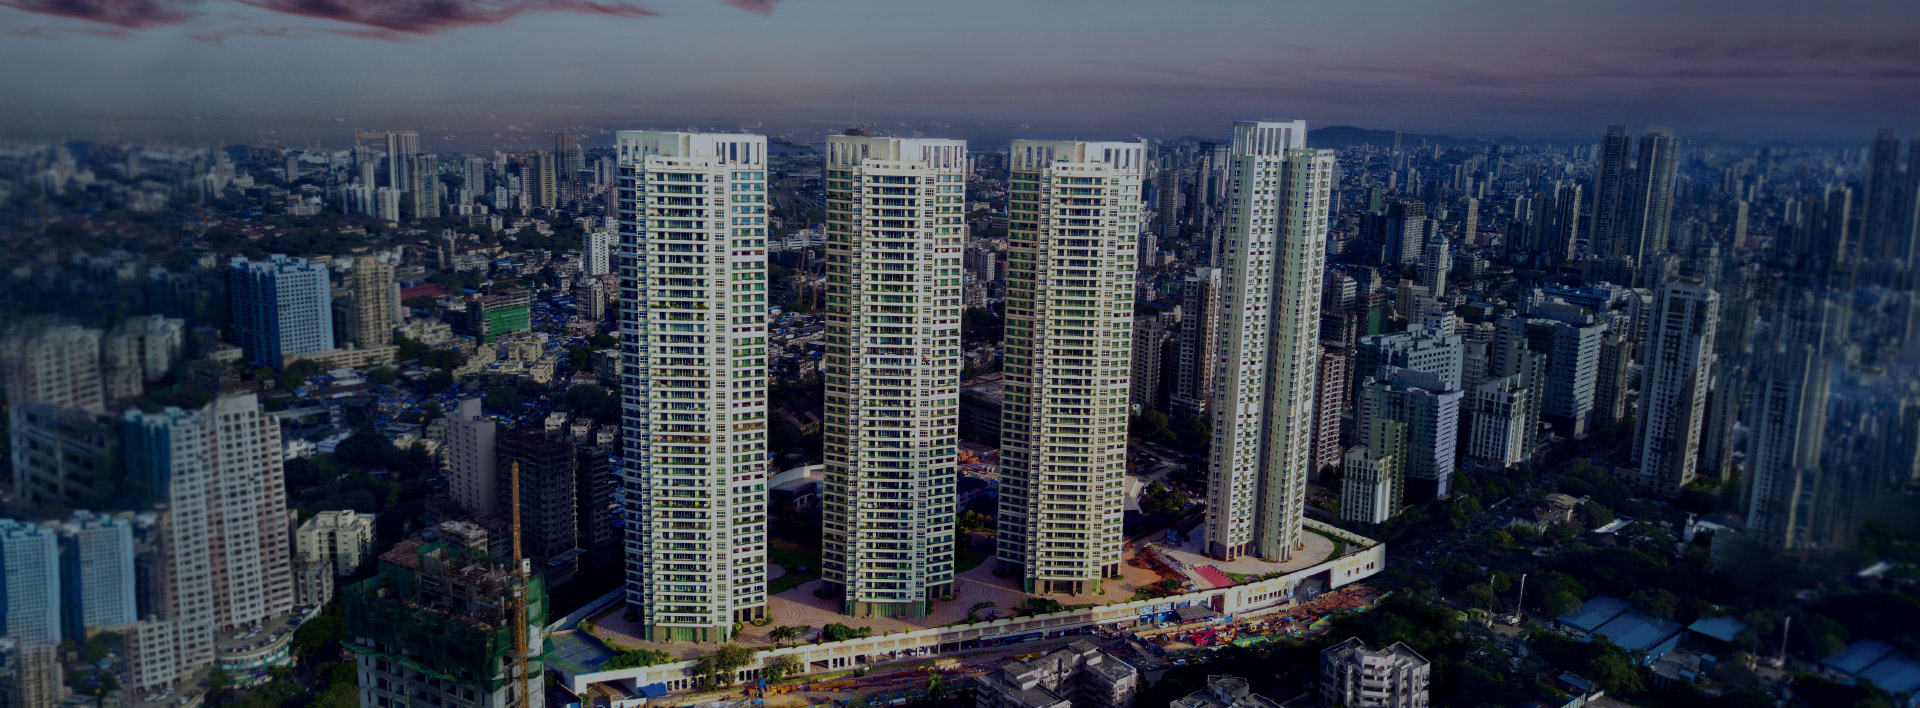 Tata Power Vivarea condominium society - Desktop